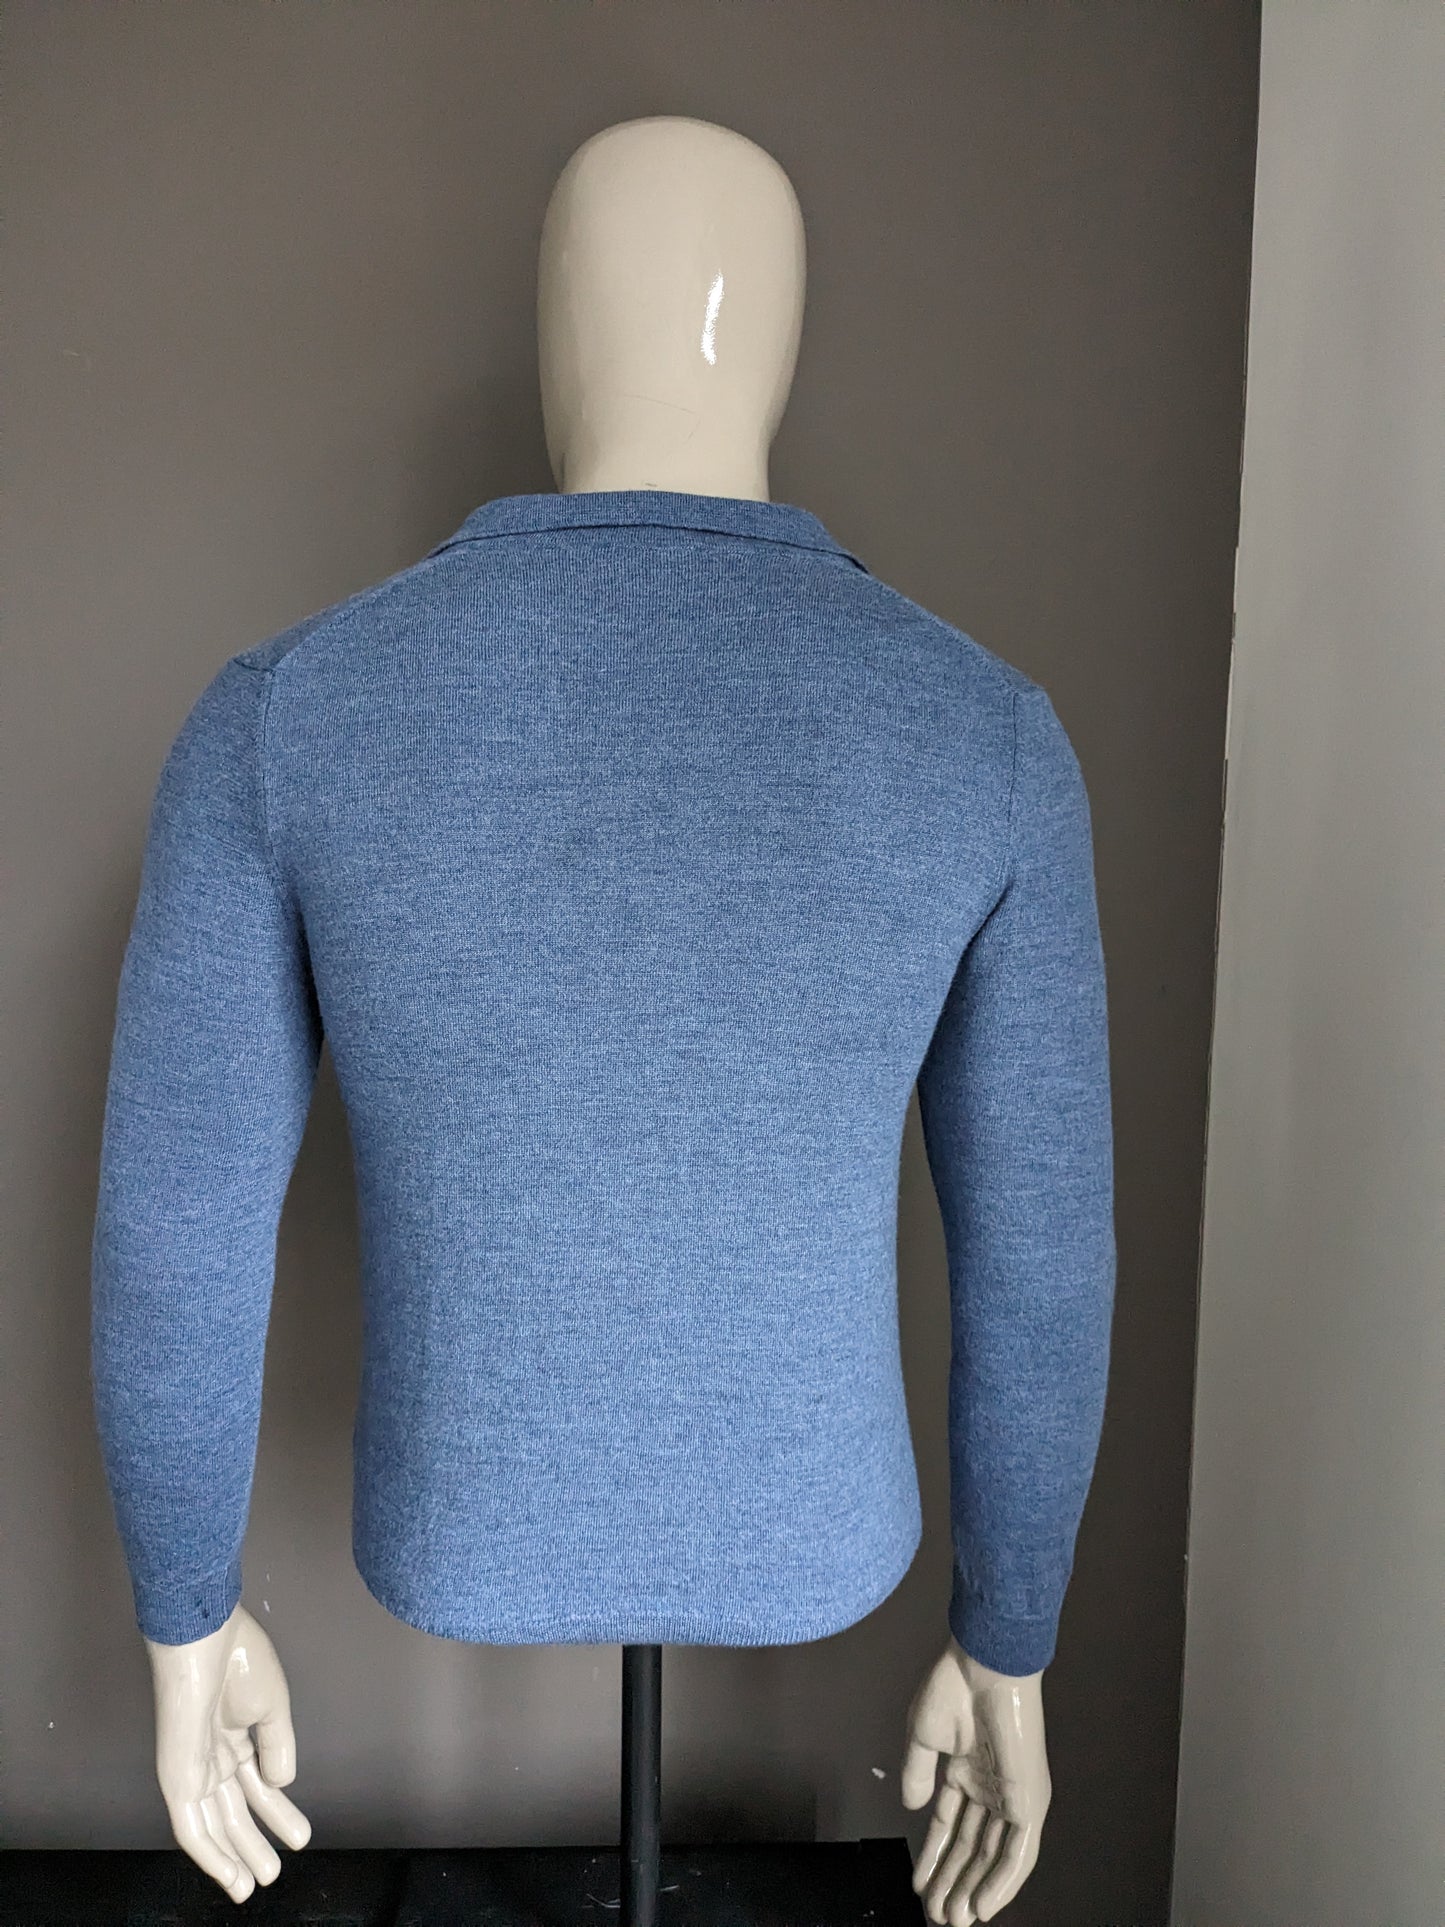 Don Hering Merino Wolle Polo -Pullover. Blau gemischt. Größe S.